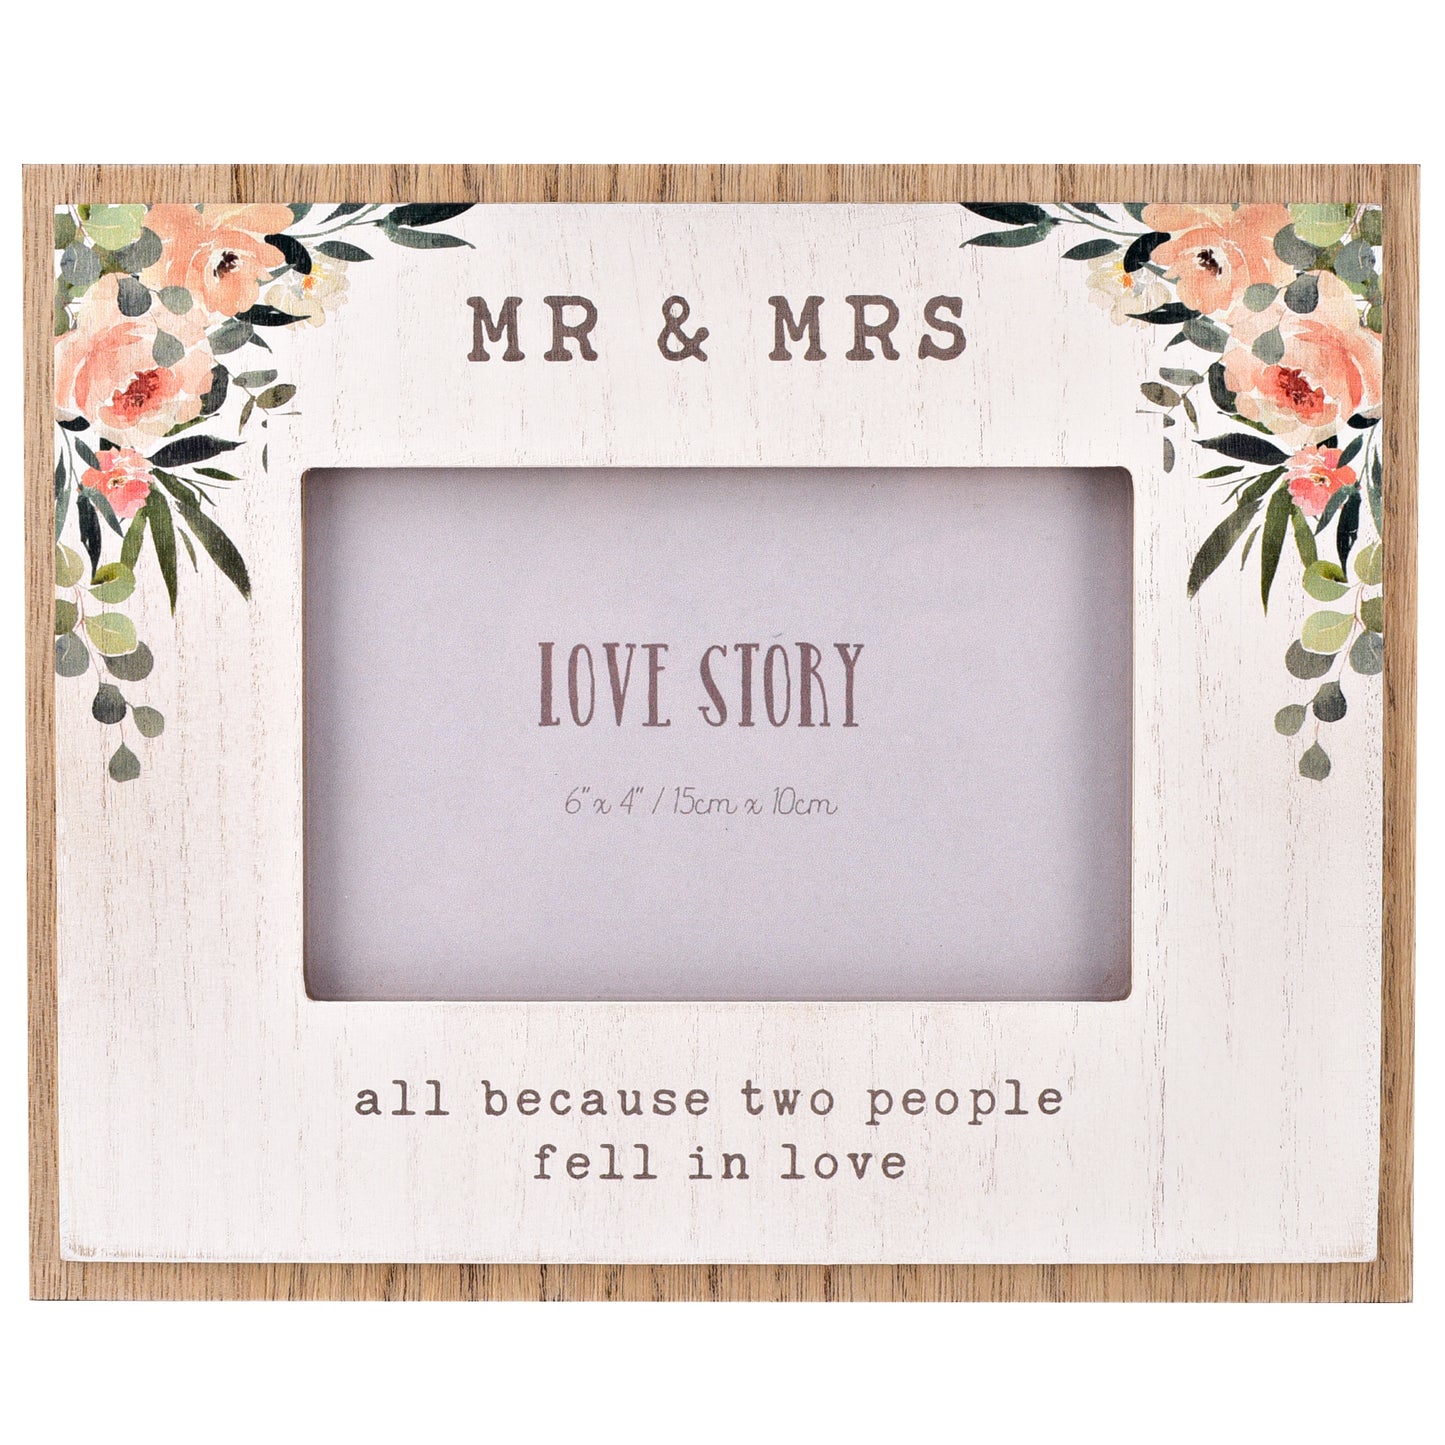 Love Story Mr & Mrs Wooden Photo Frame